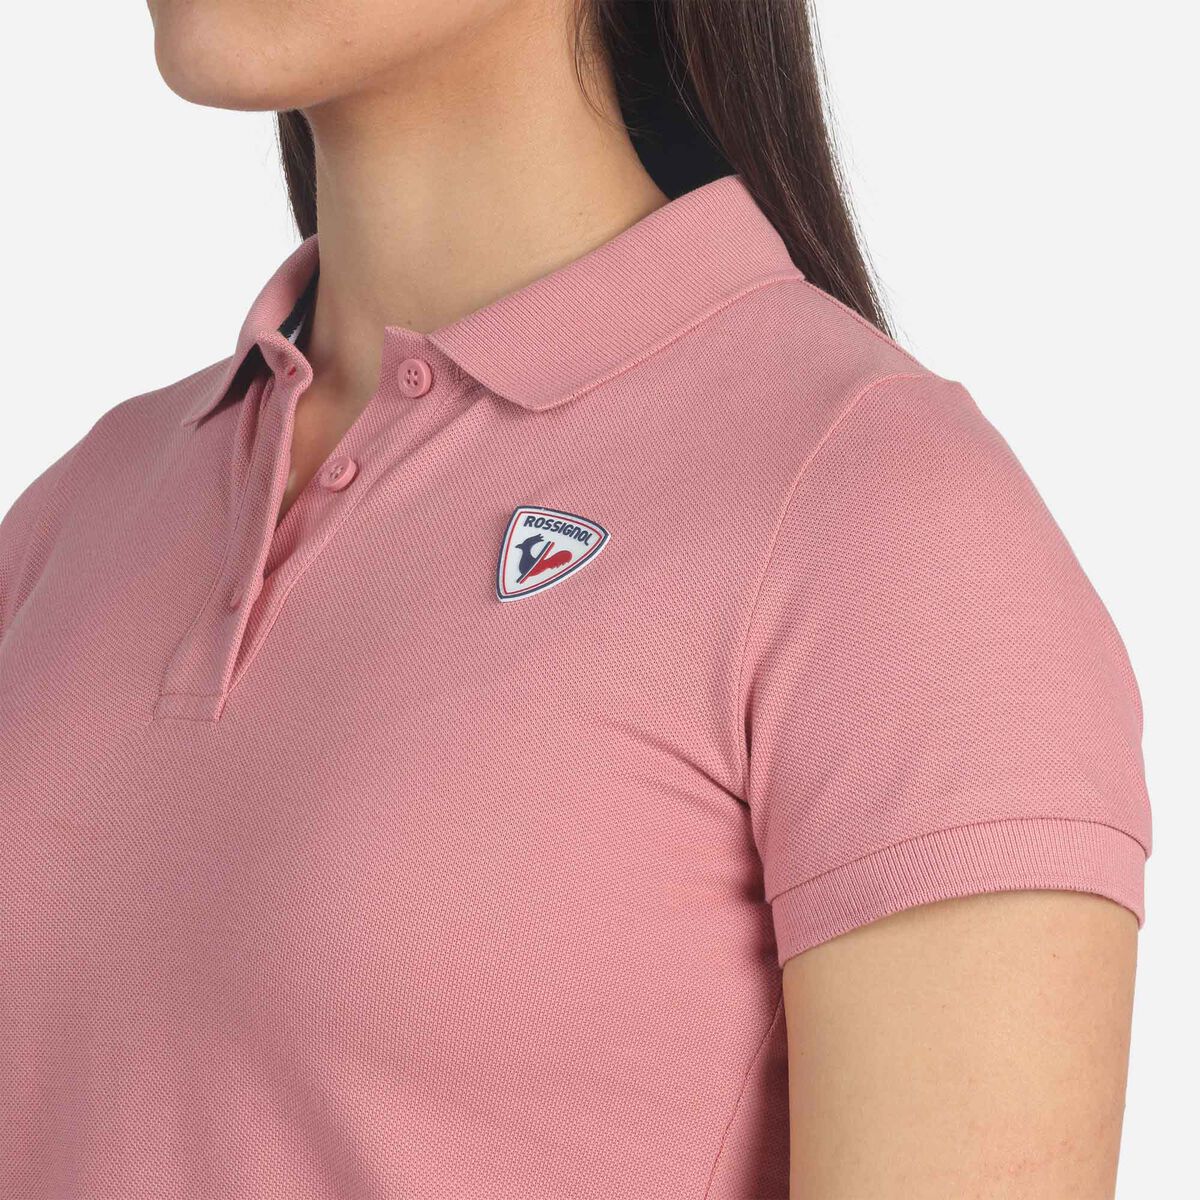 Rossignol Logo Polohemd für Damen pinkpurple